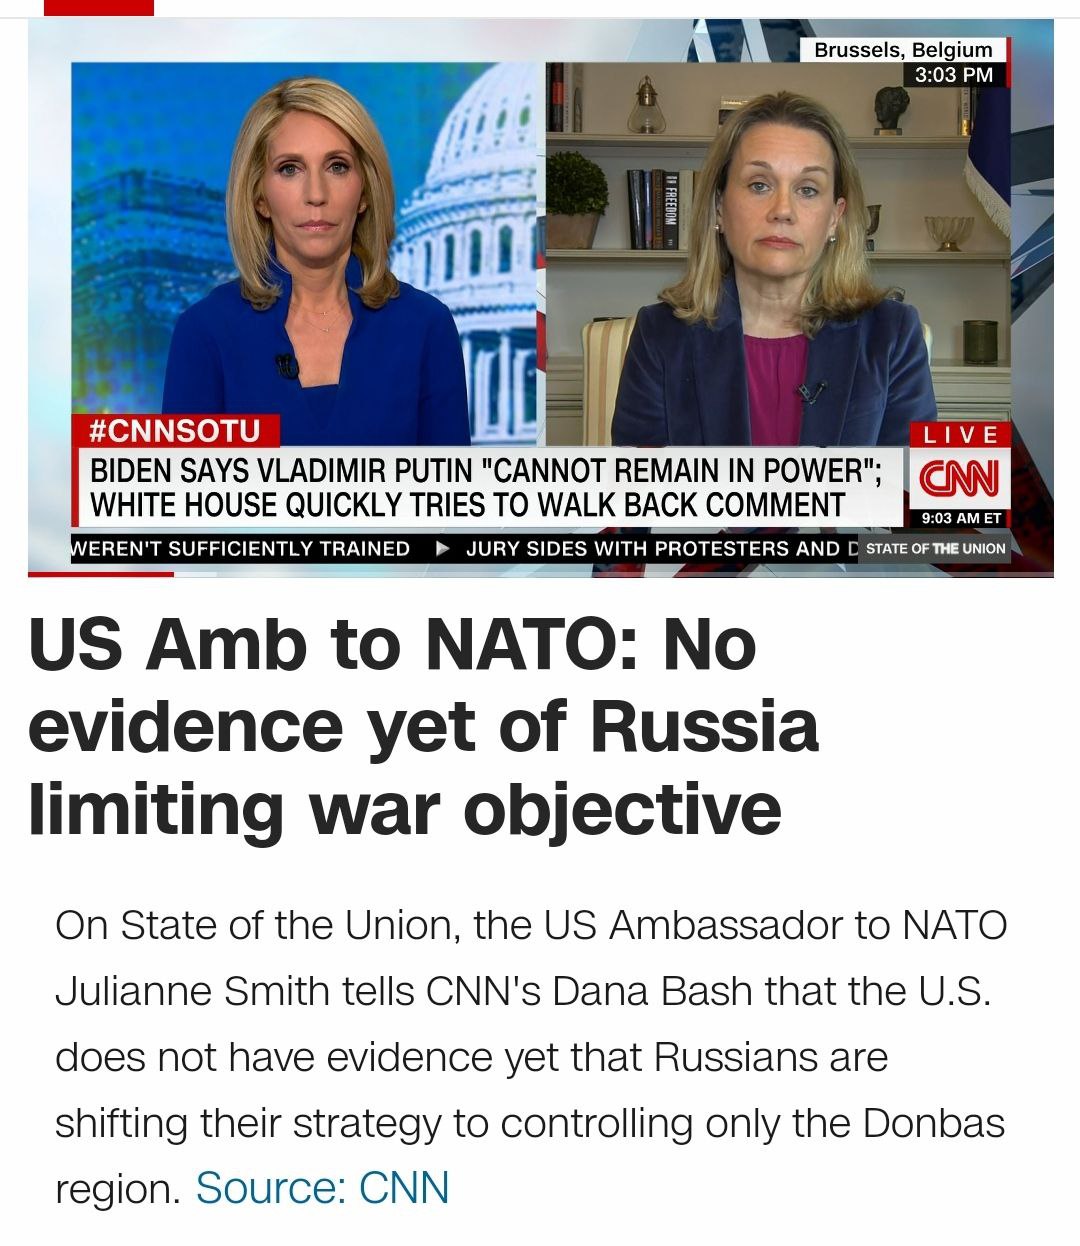 У США нет доказательств смены стратегии Россией